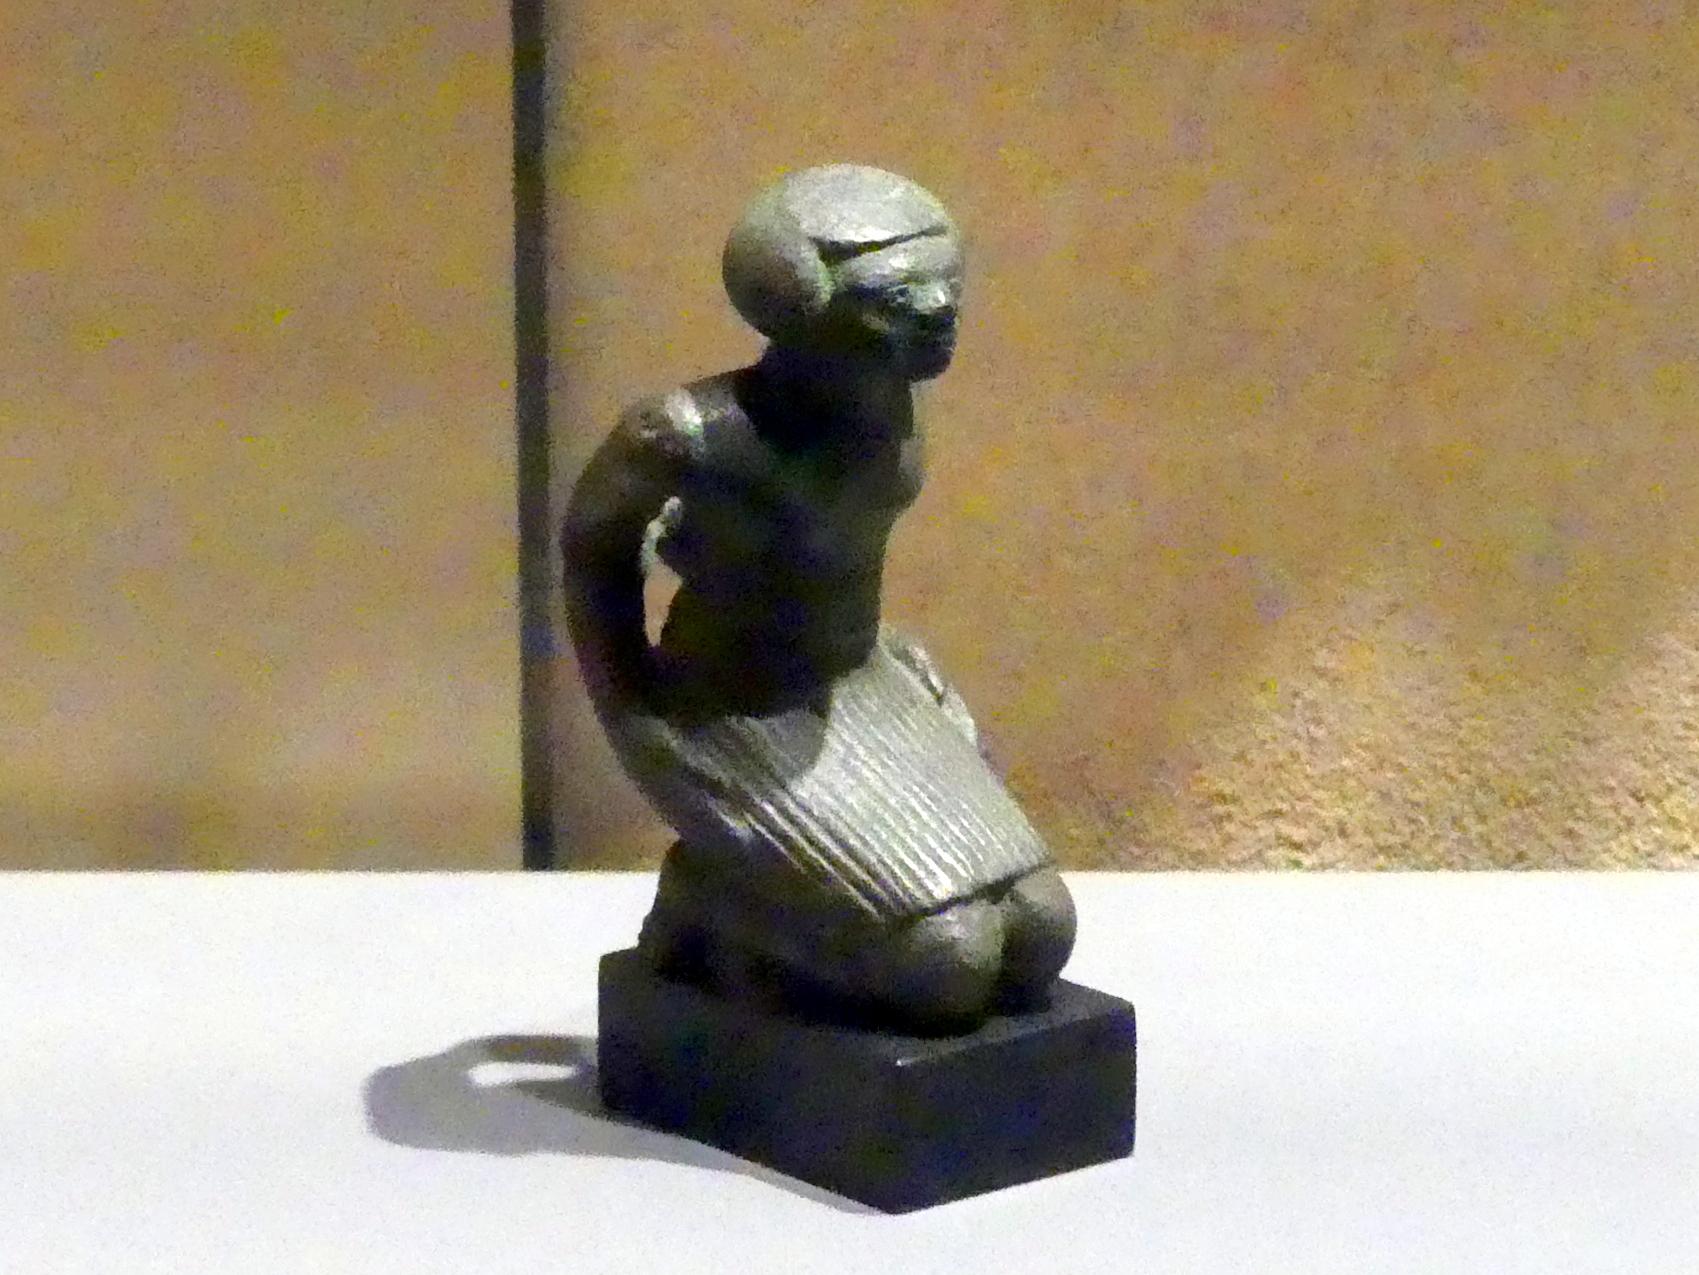 Figur eines knienden und gefesselten nubischen Gefangenen, 18. Dynastie, Undatiert, 1550 - 1450 v. Chr., Bild 1/2